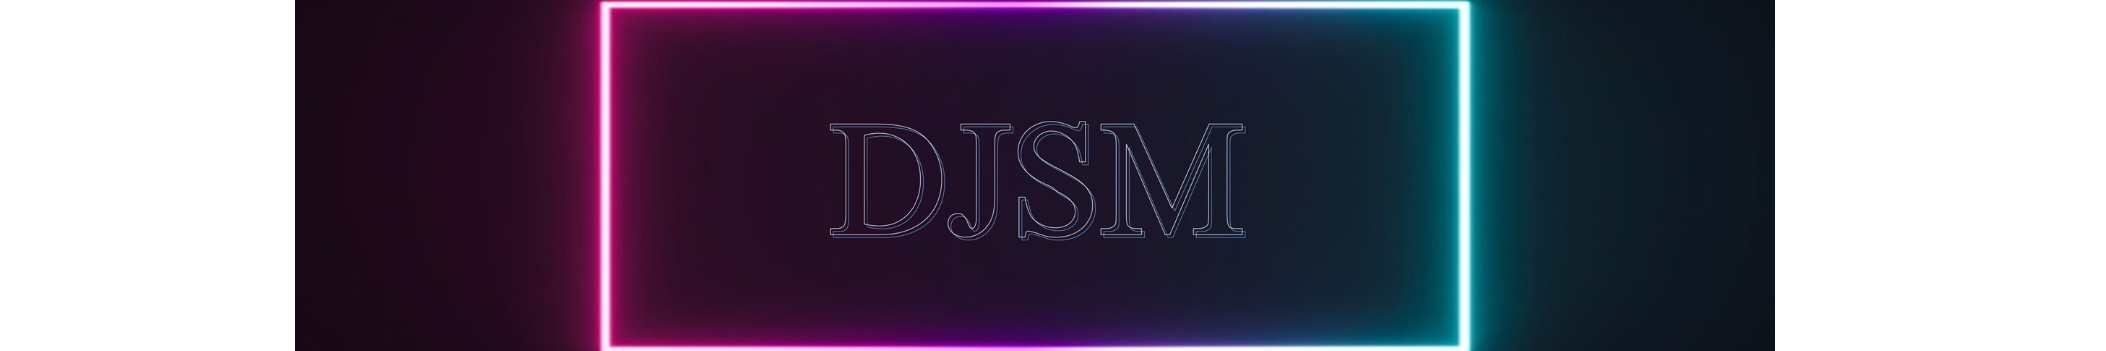 DJSM